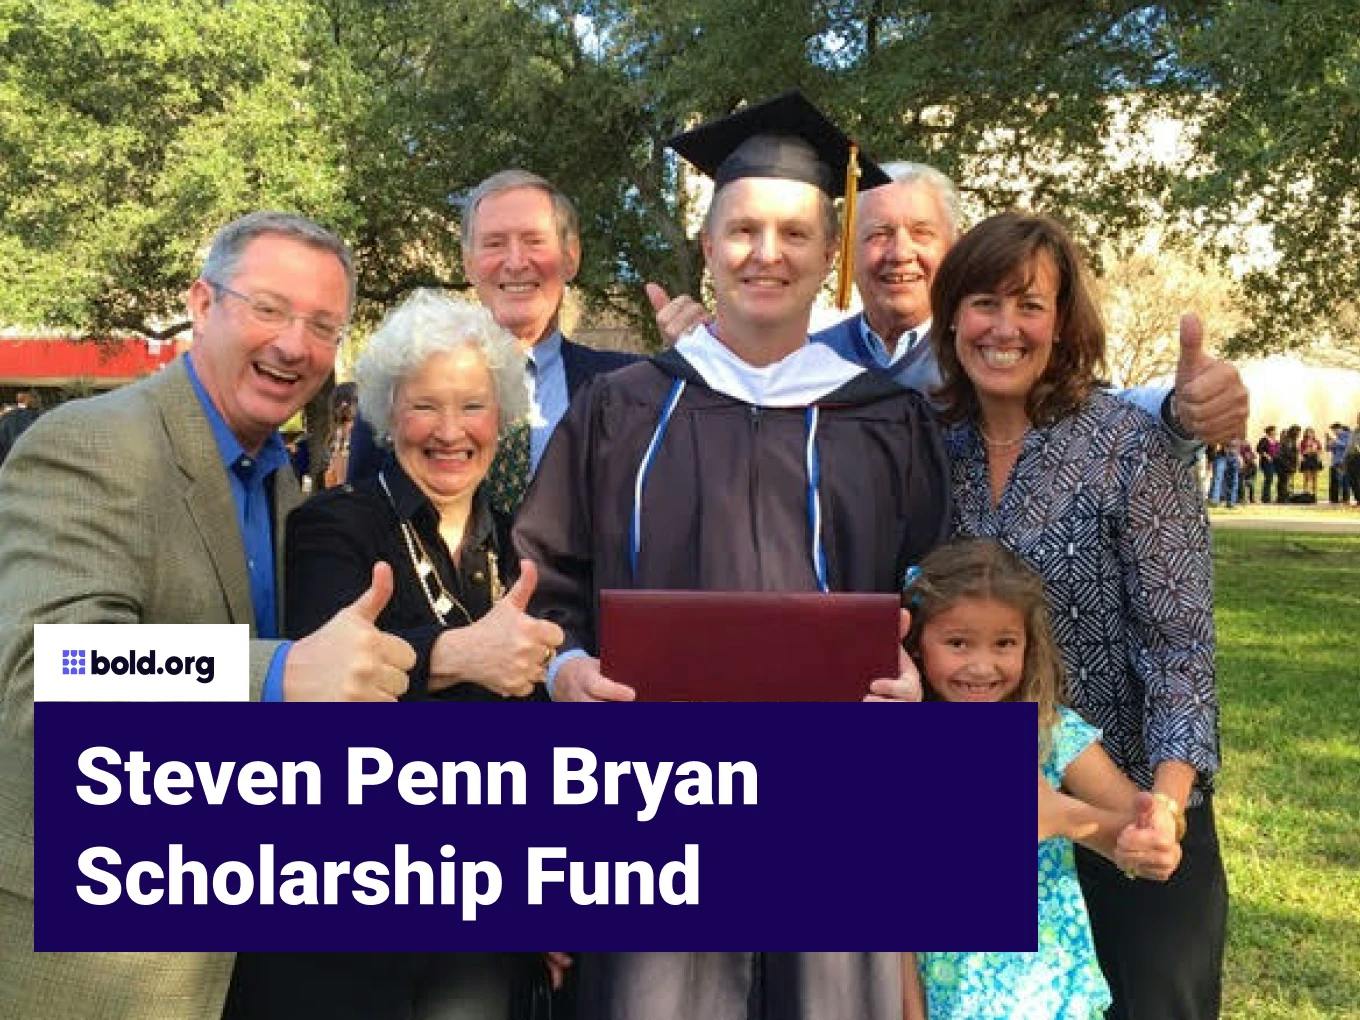 Steven Penn Bryan Scholarship Fund